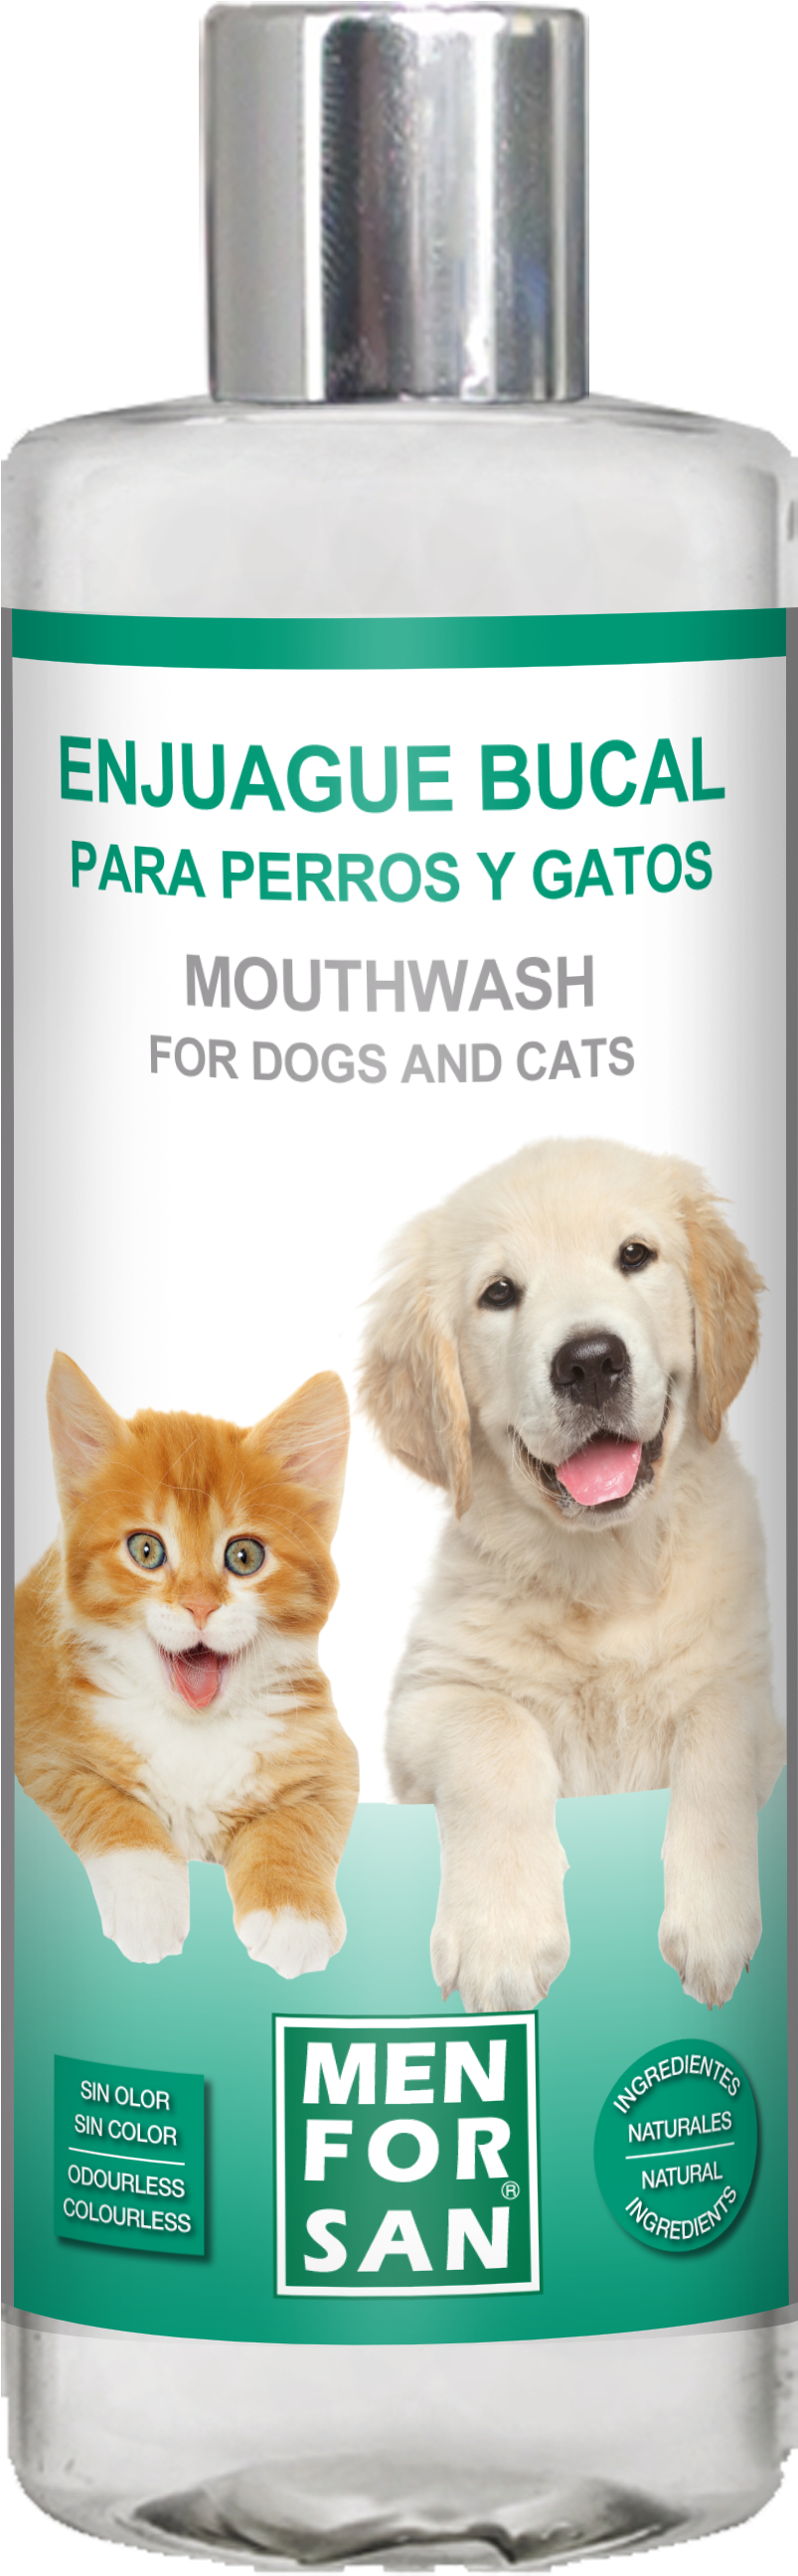 Pet Mouthwash Dogs Cats Menforsan PNG image